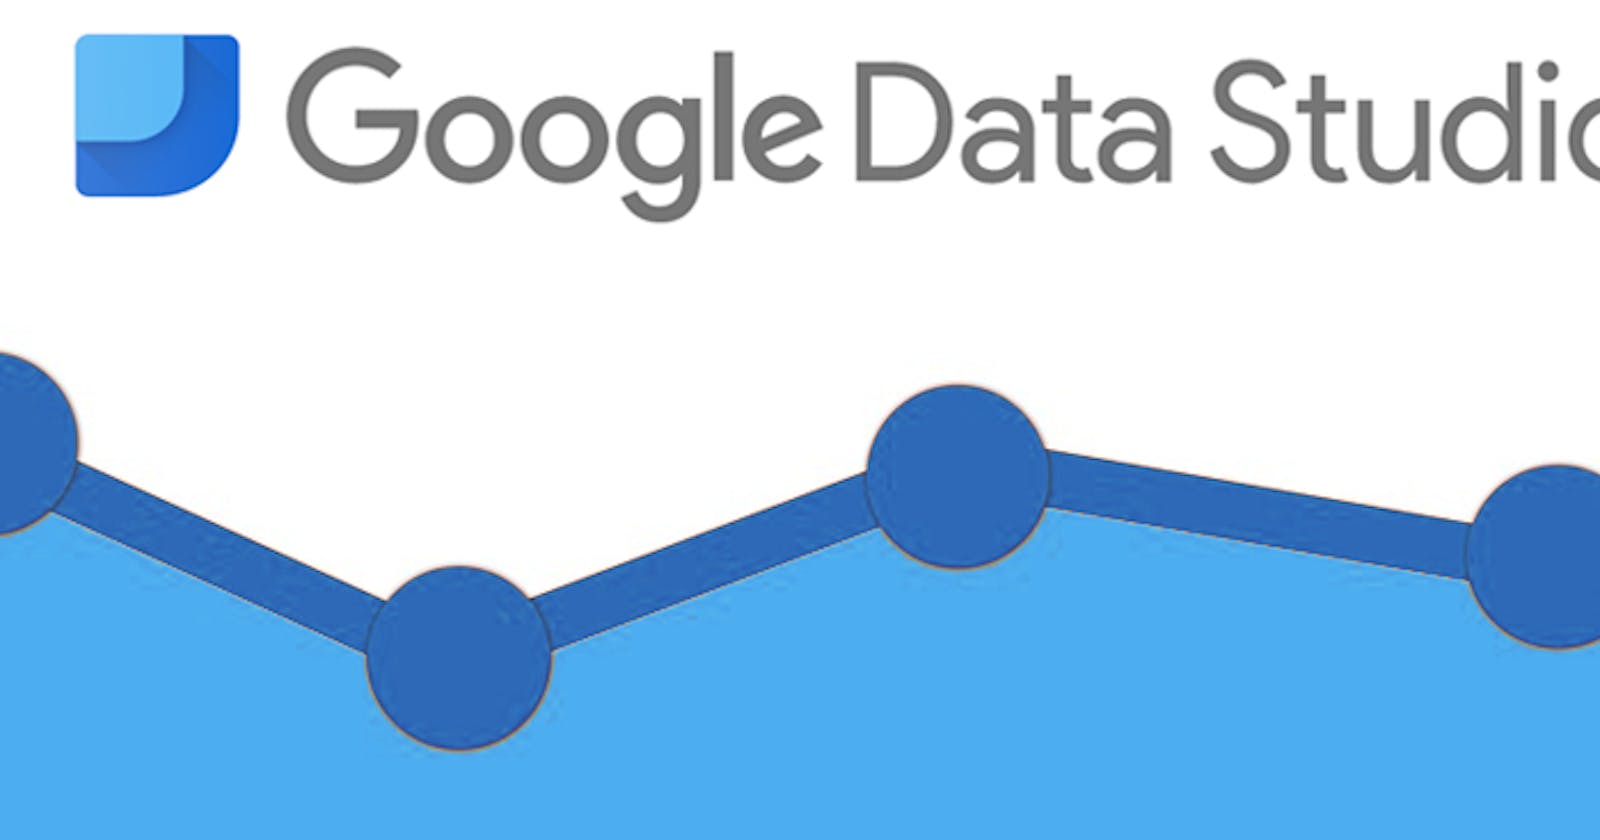 Google Data Studio for Google Analytics reporting